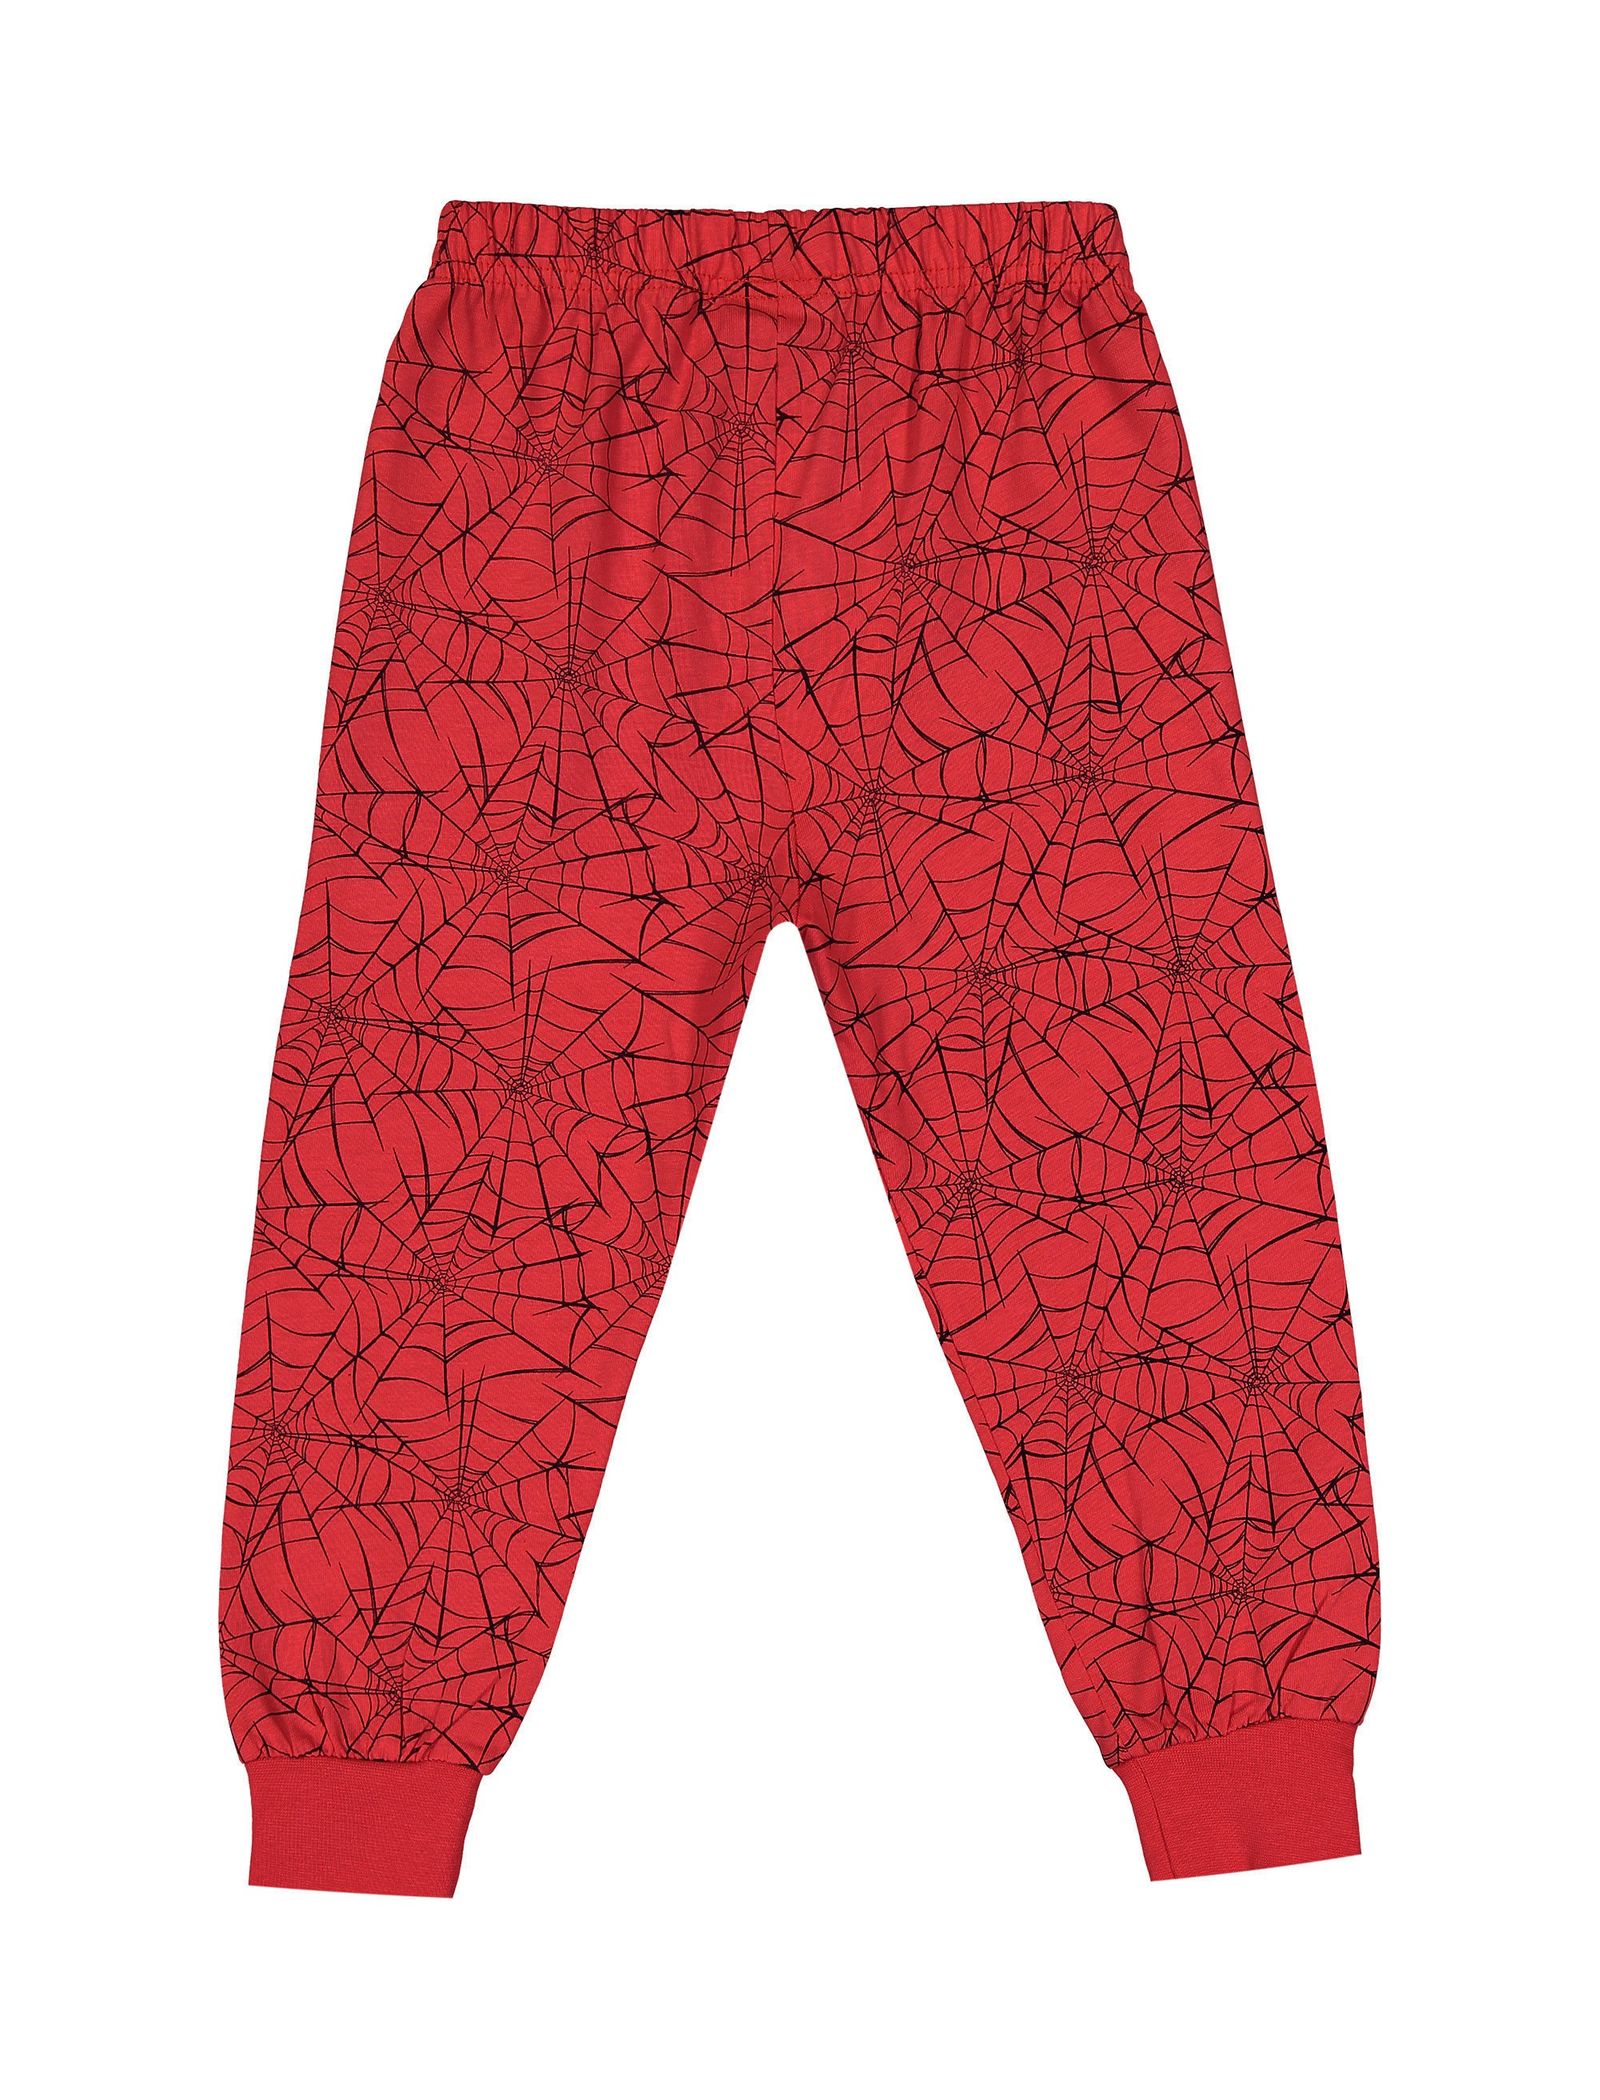 تی شرت و شلوار راحتی نخی پسرانه - دبنهامز - قرمز و ط.وسي - 6